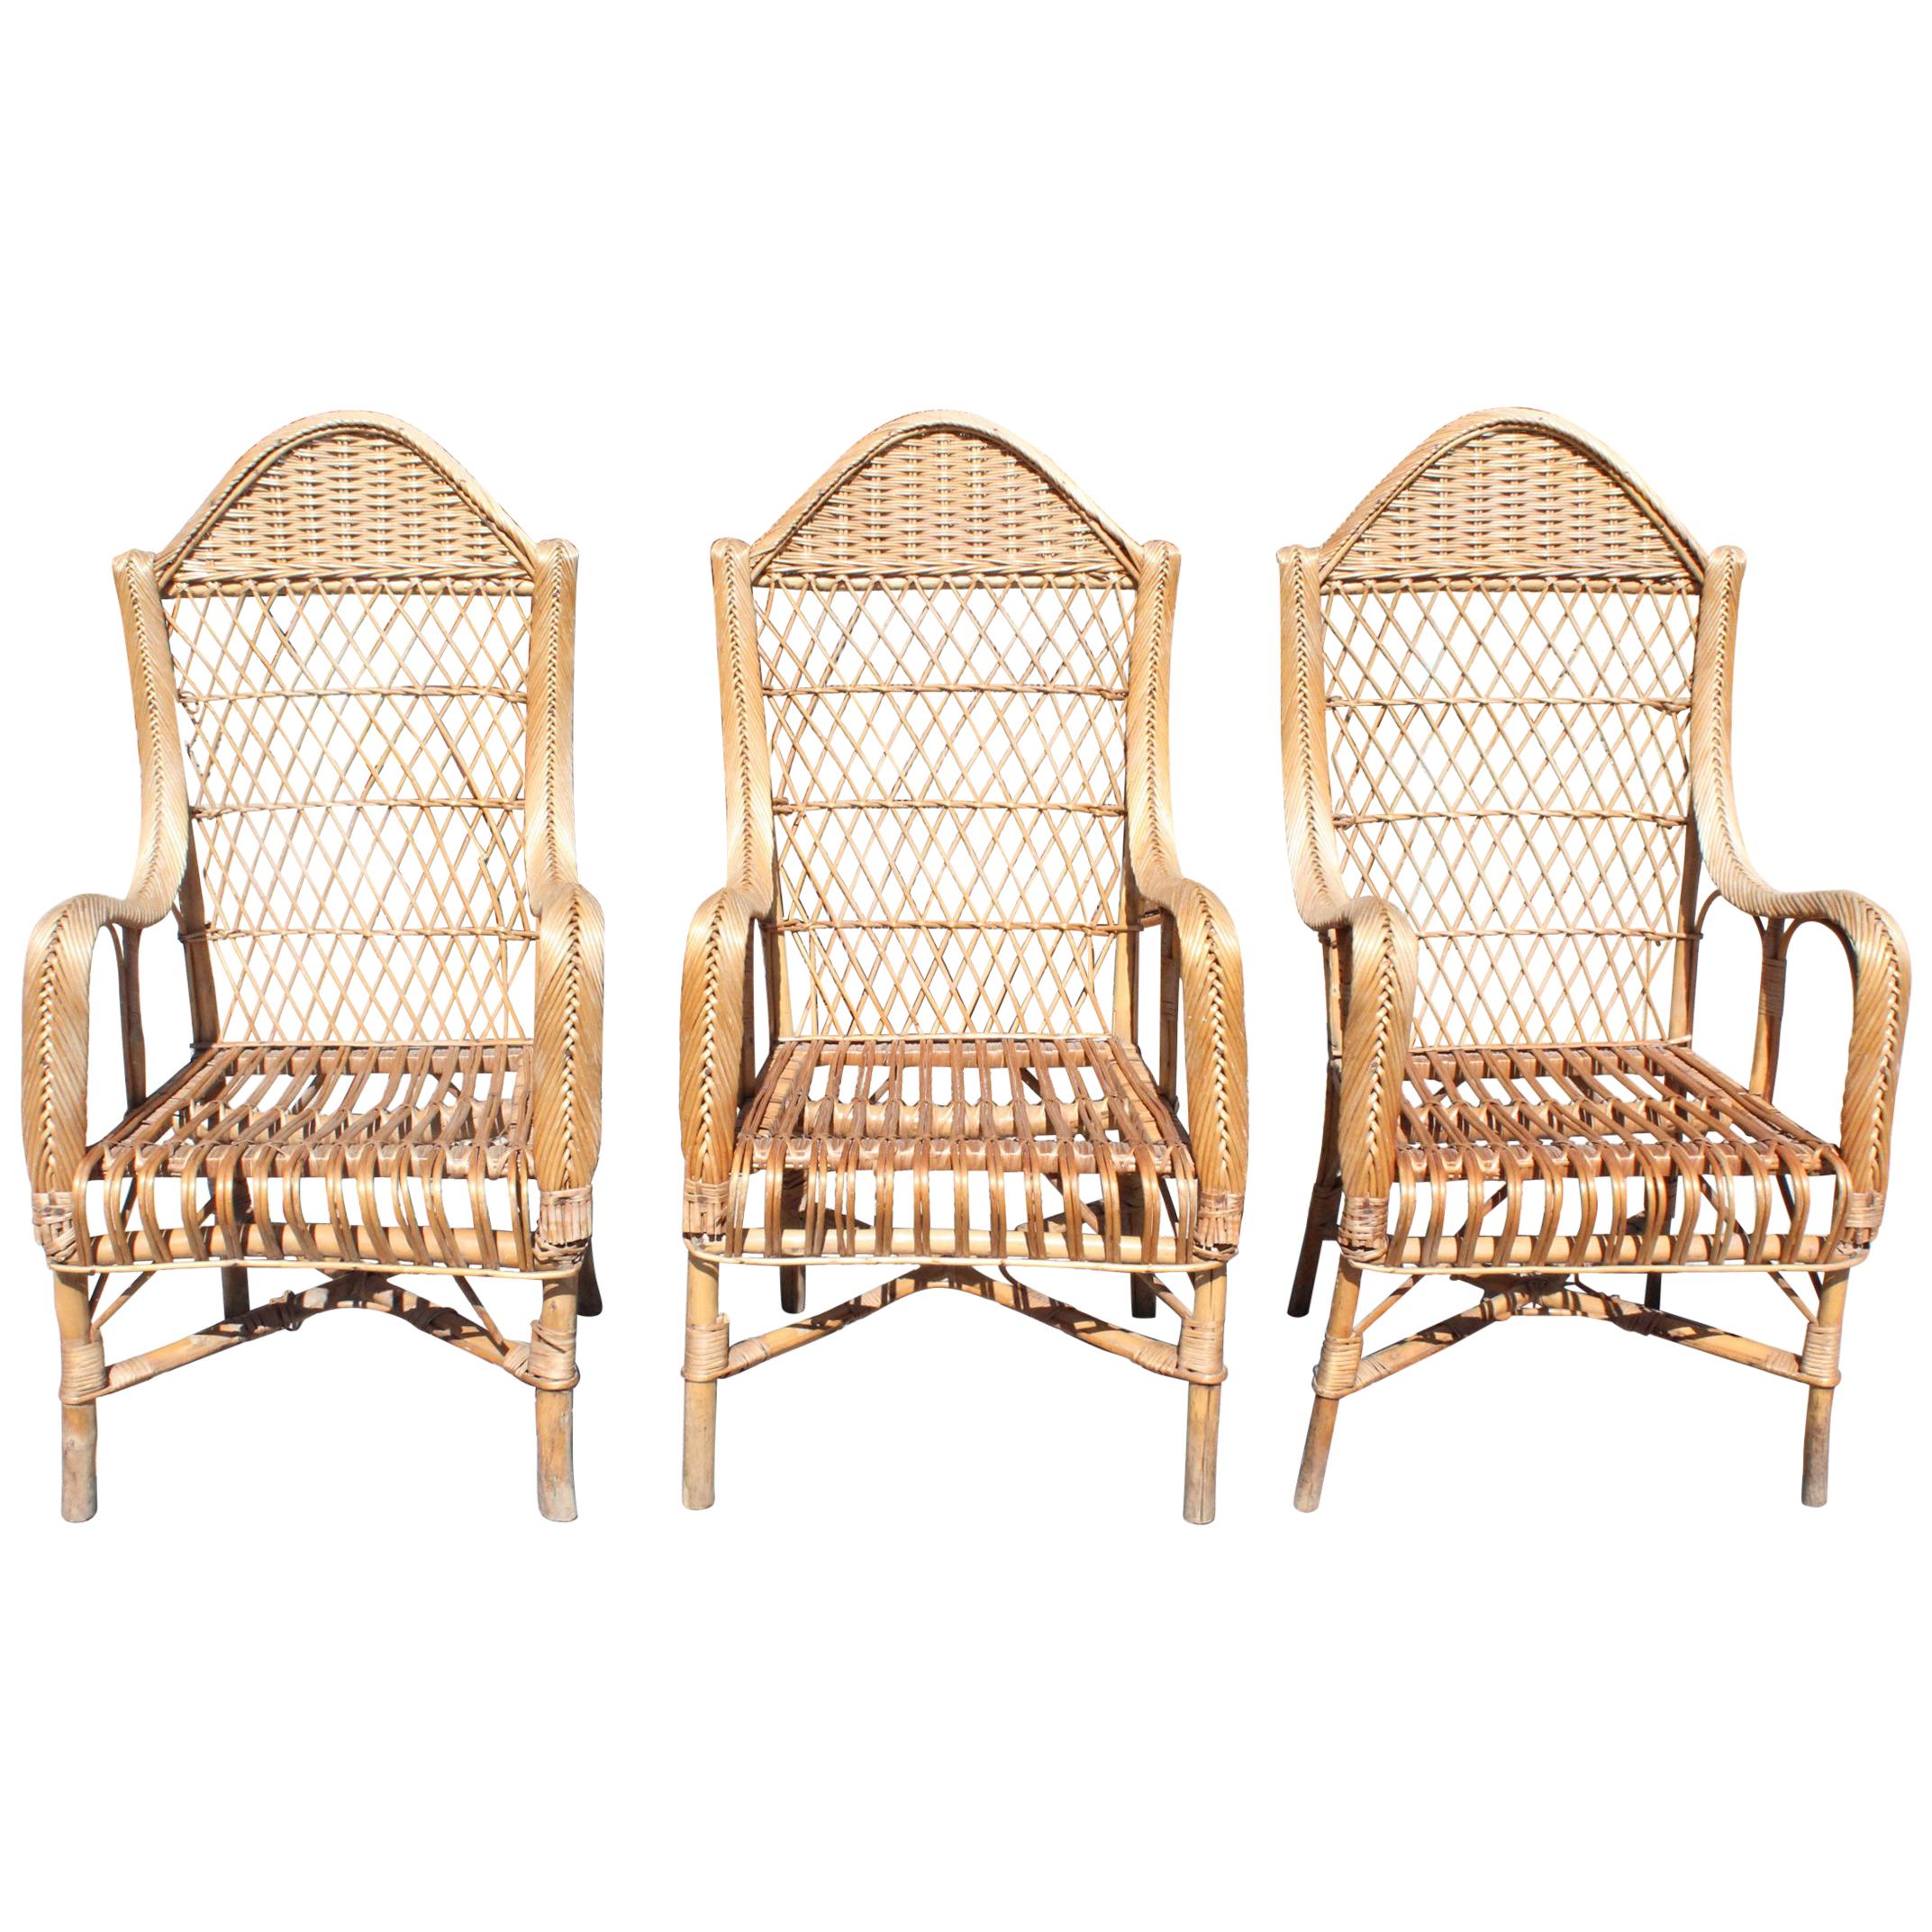 Ensemble de trois fauteuils espagnols en bambou et rotin stratifié des années 1970